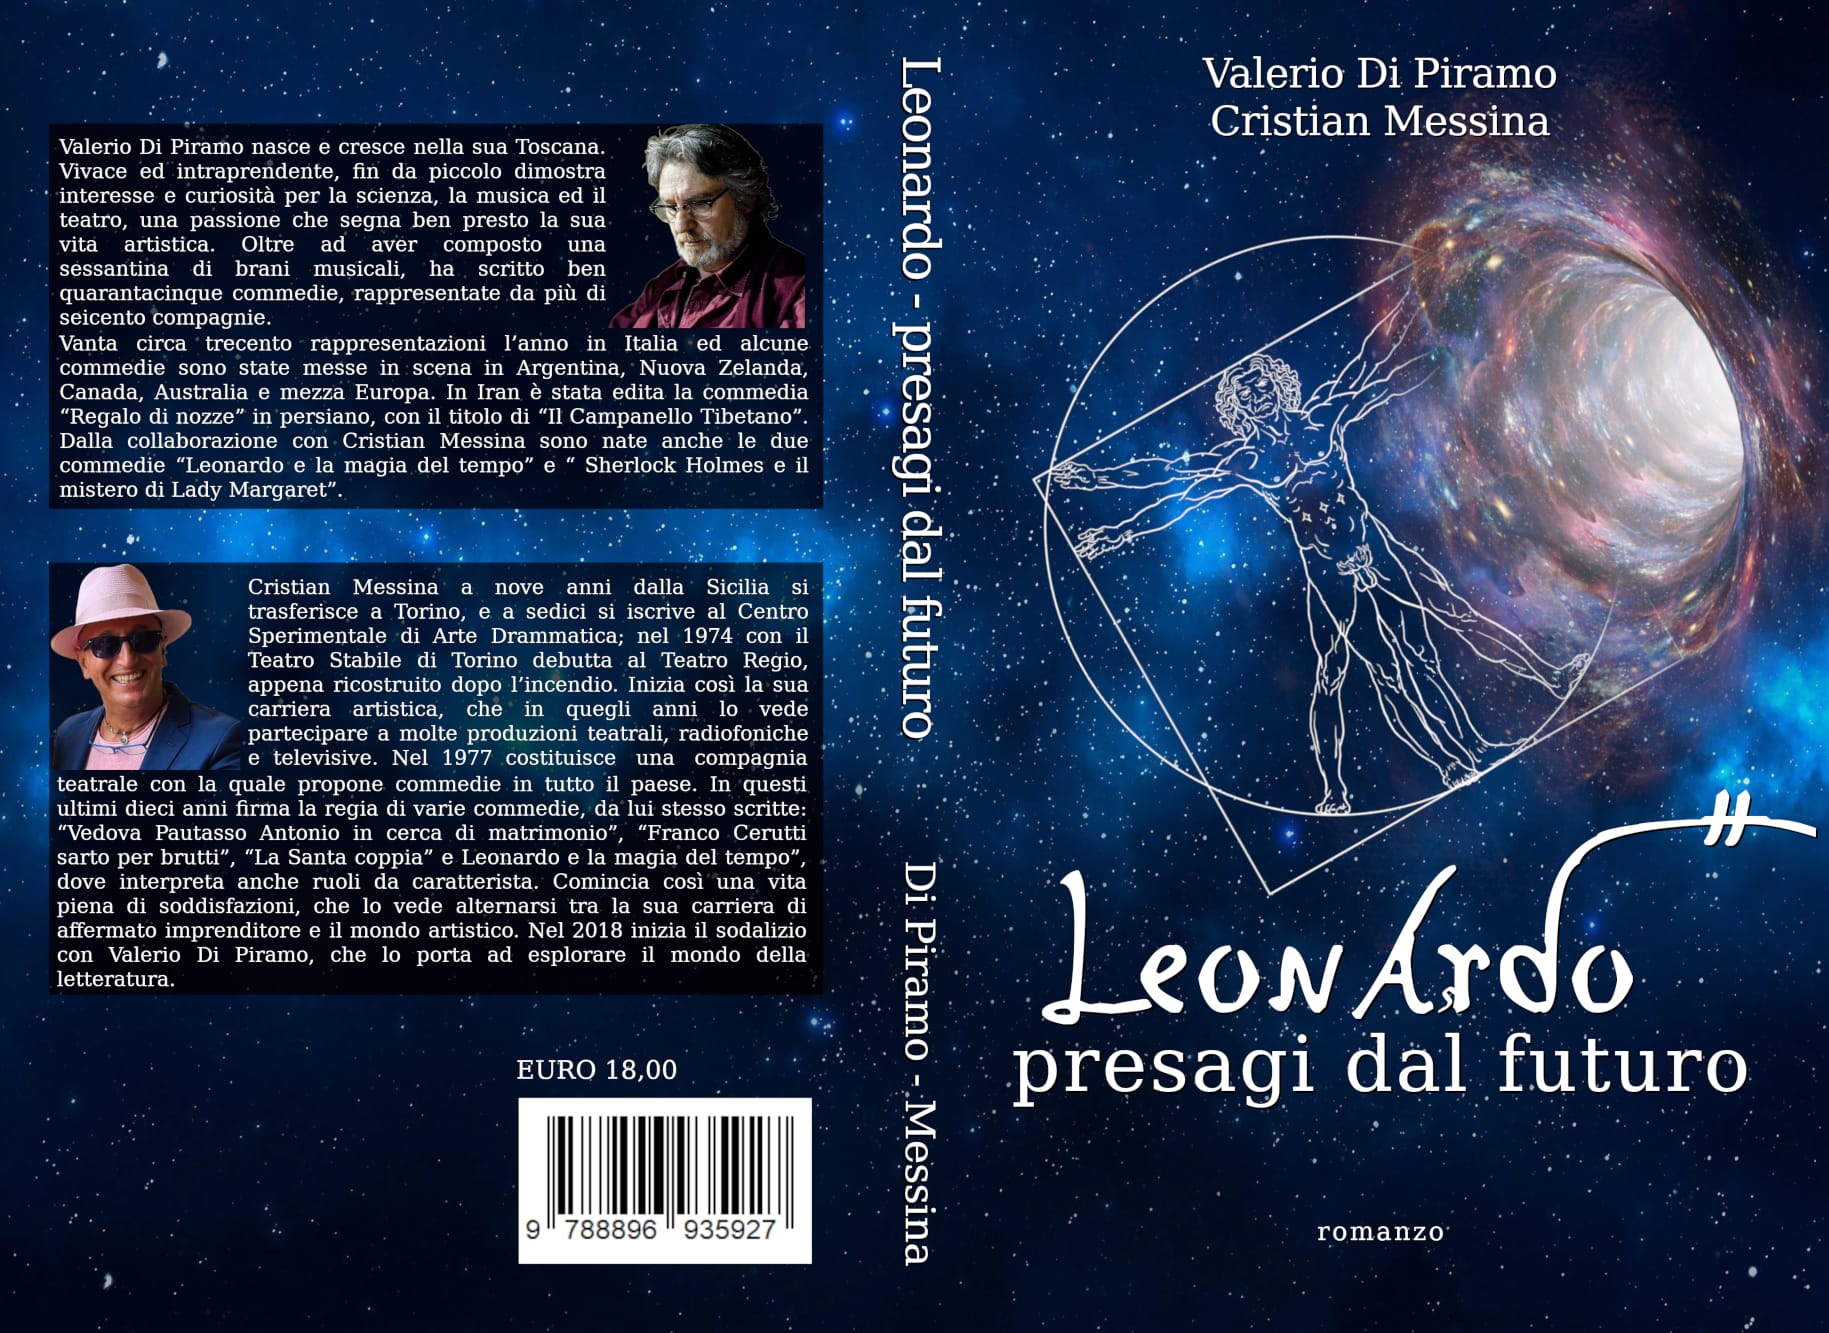 Leonardo, presagi dal futuro: tra storia e fantasy, il romanzo d’esordio di Valerio Di Piramo e del gelese Cristian Messina